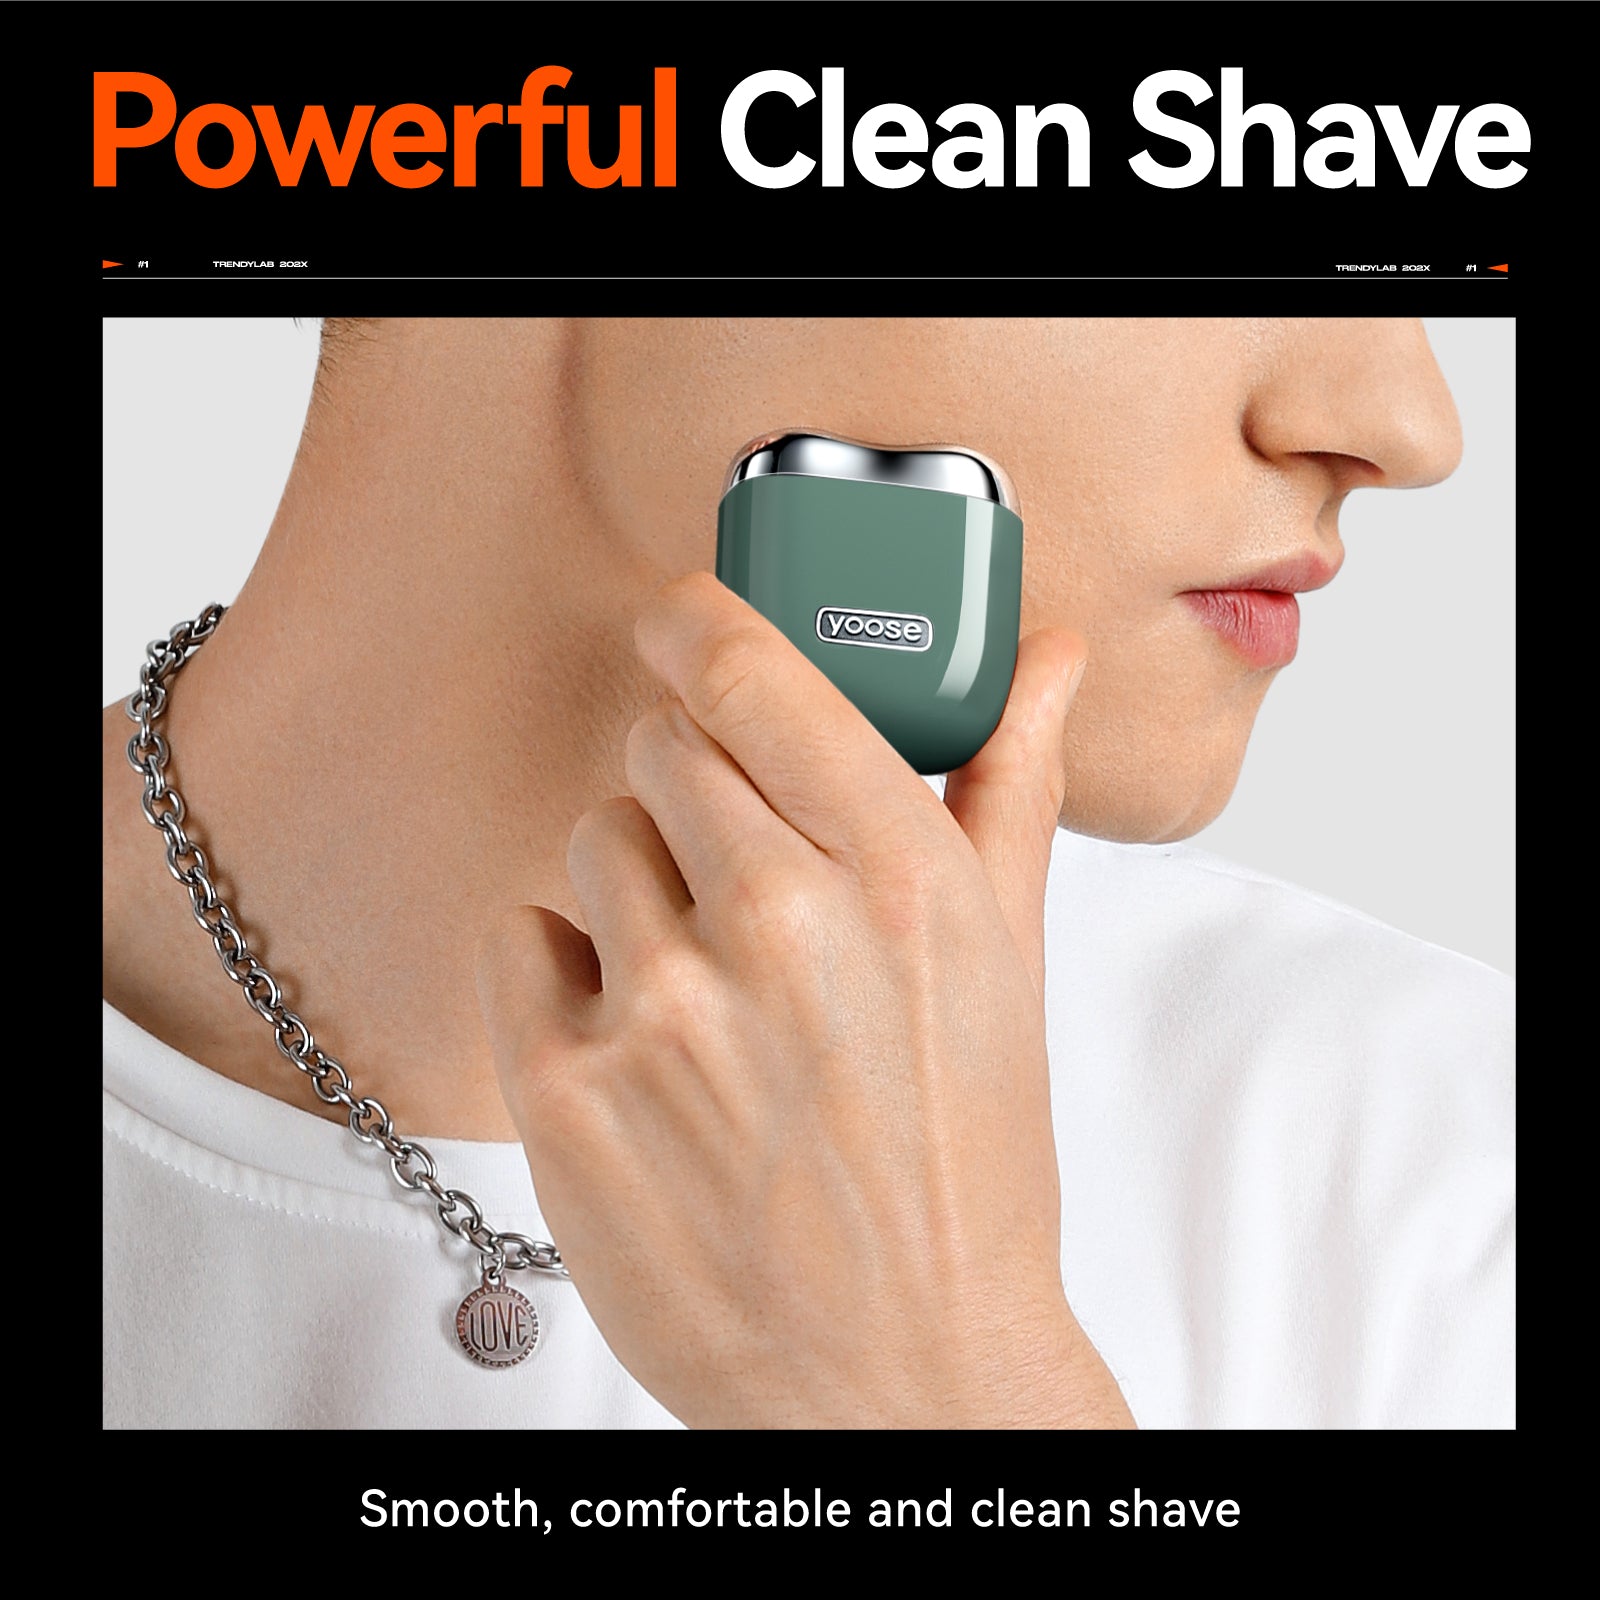 yoose Alloy Mini Compact Face Shaver - Men’s Travel Facial Shaver